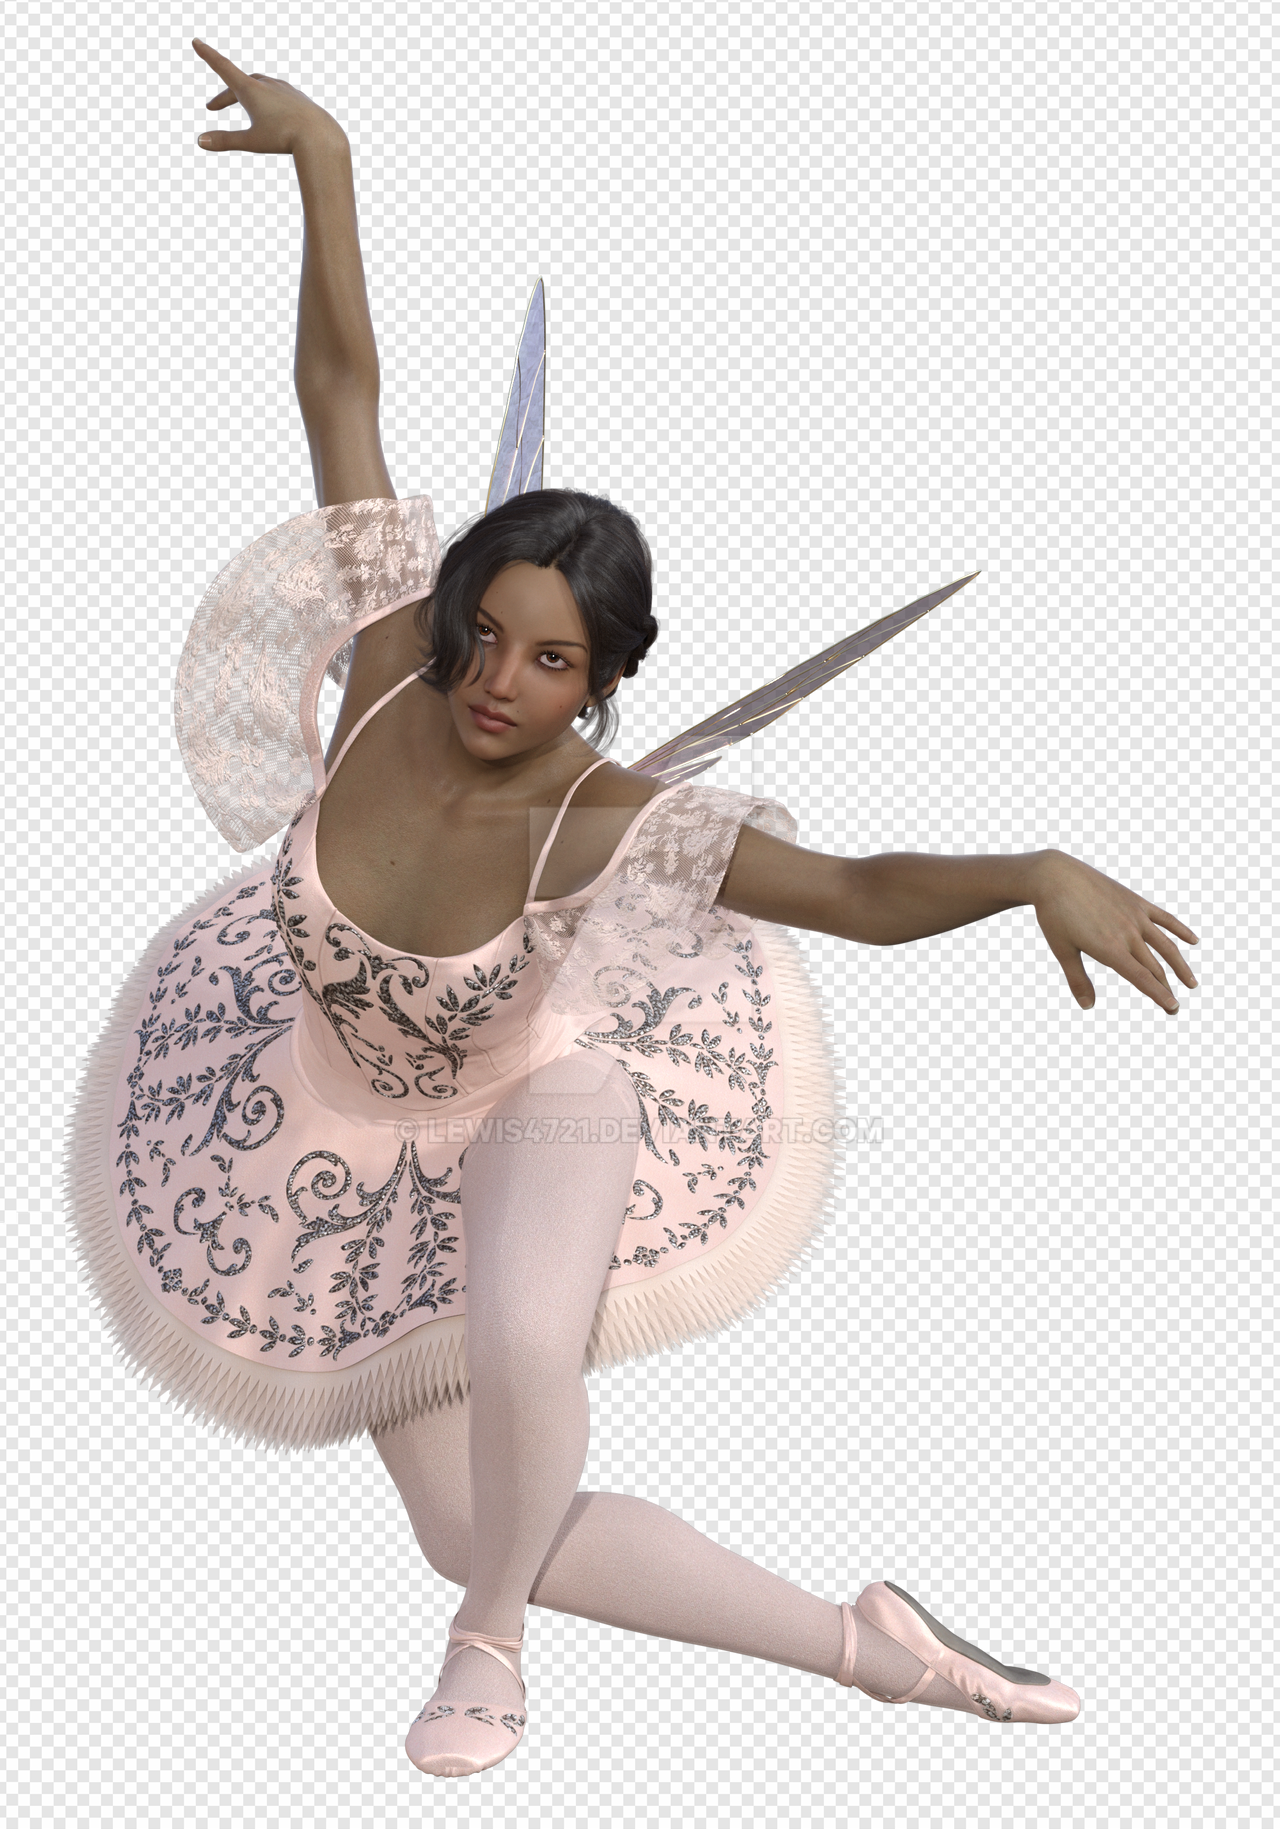 Ballerina PNG Transparent Images Download - PNG Packs